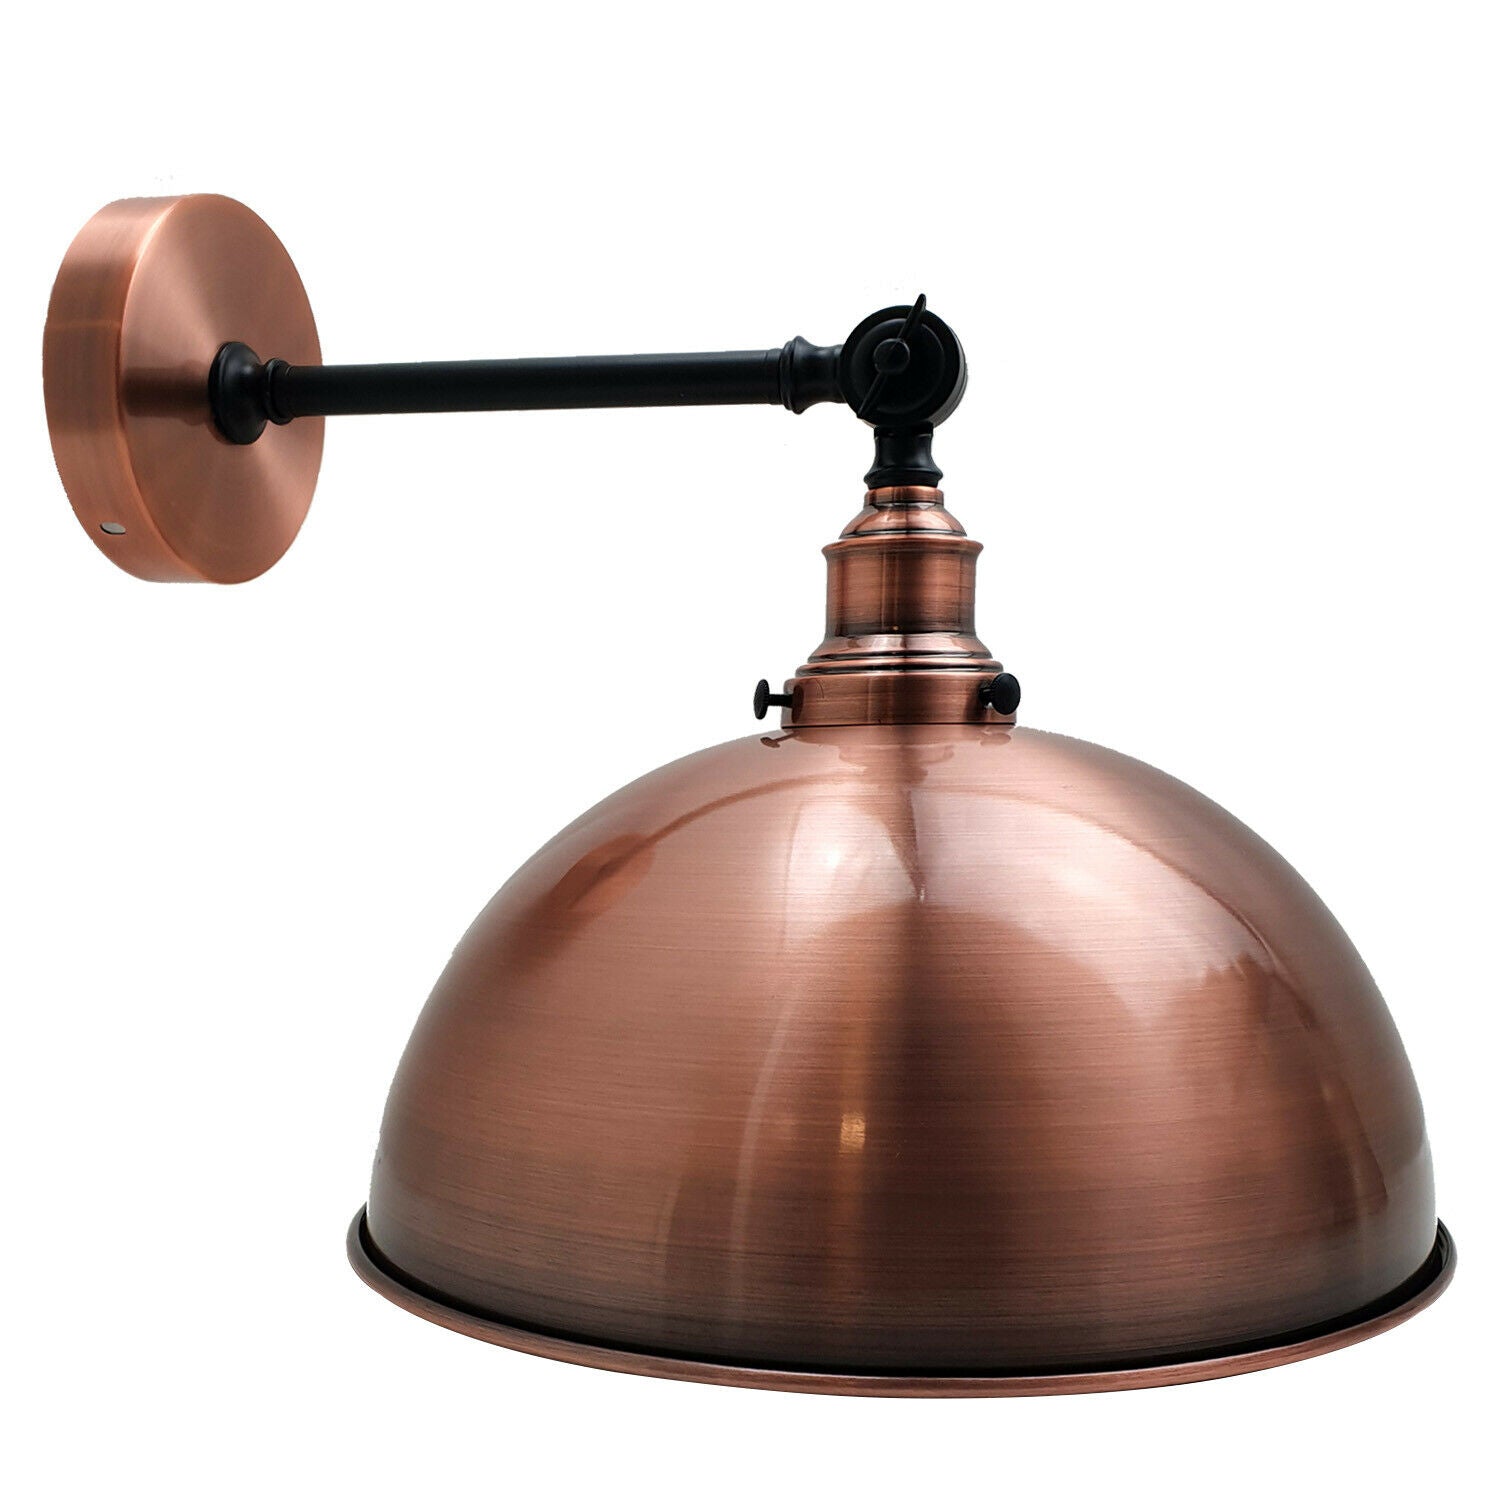 Vintage Style Adjustable Copper Color Wall Lights Sconce Lamp Fitting Kit~2473 - LEDSone UK Ltd